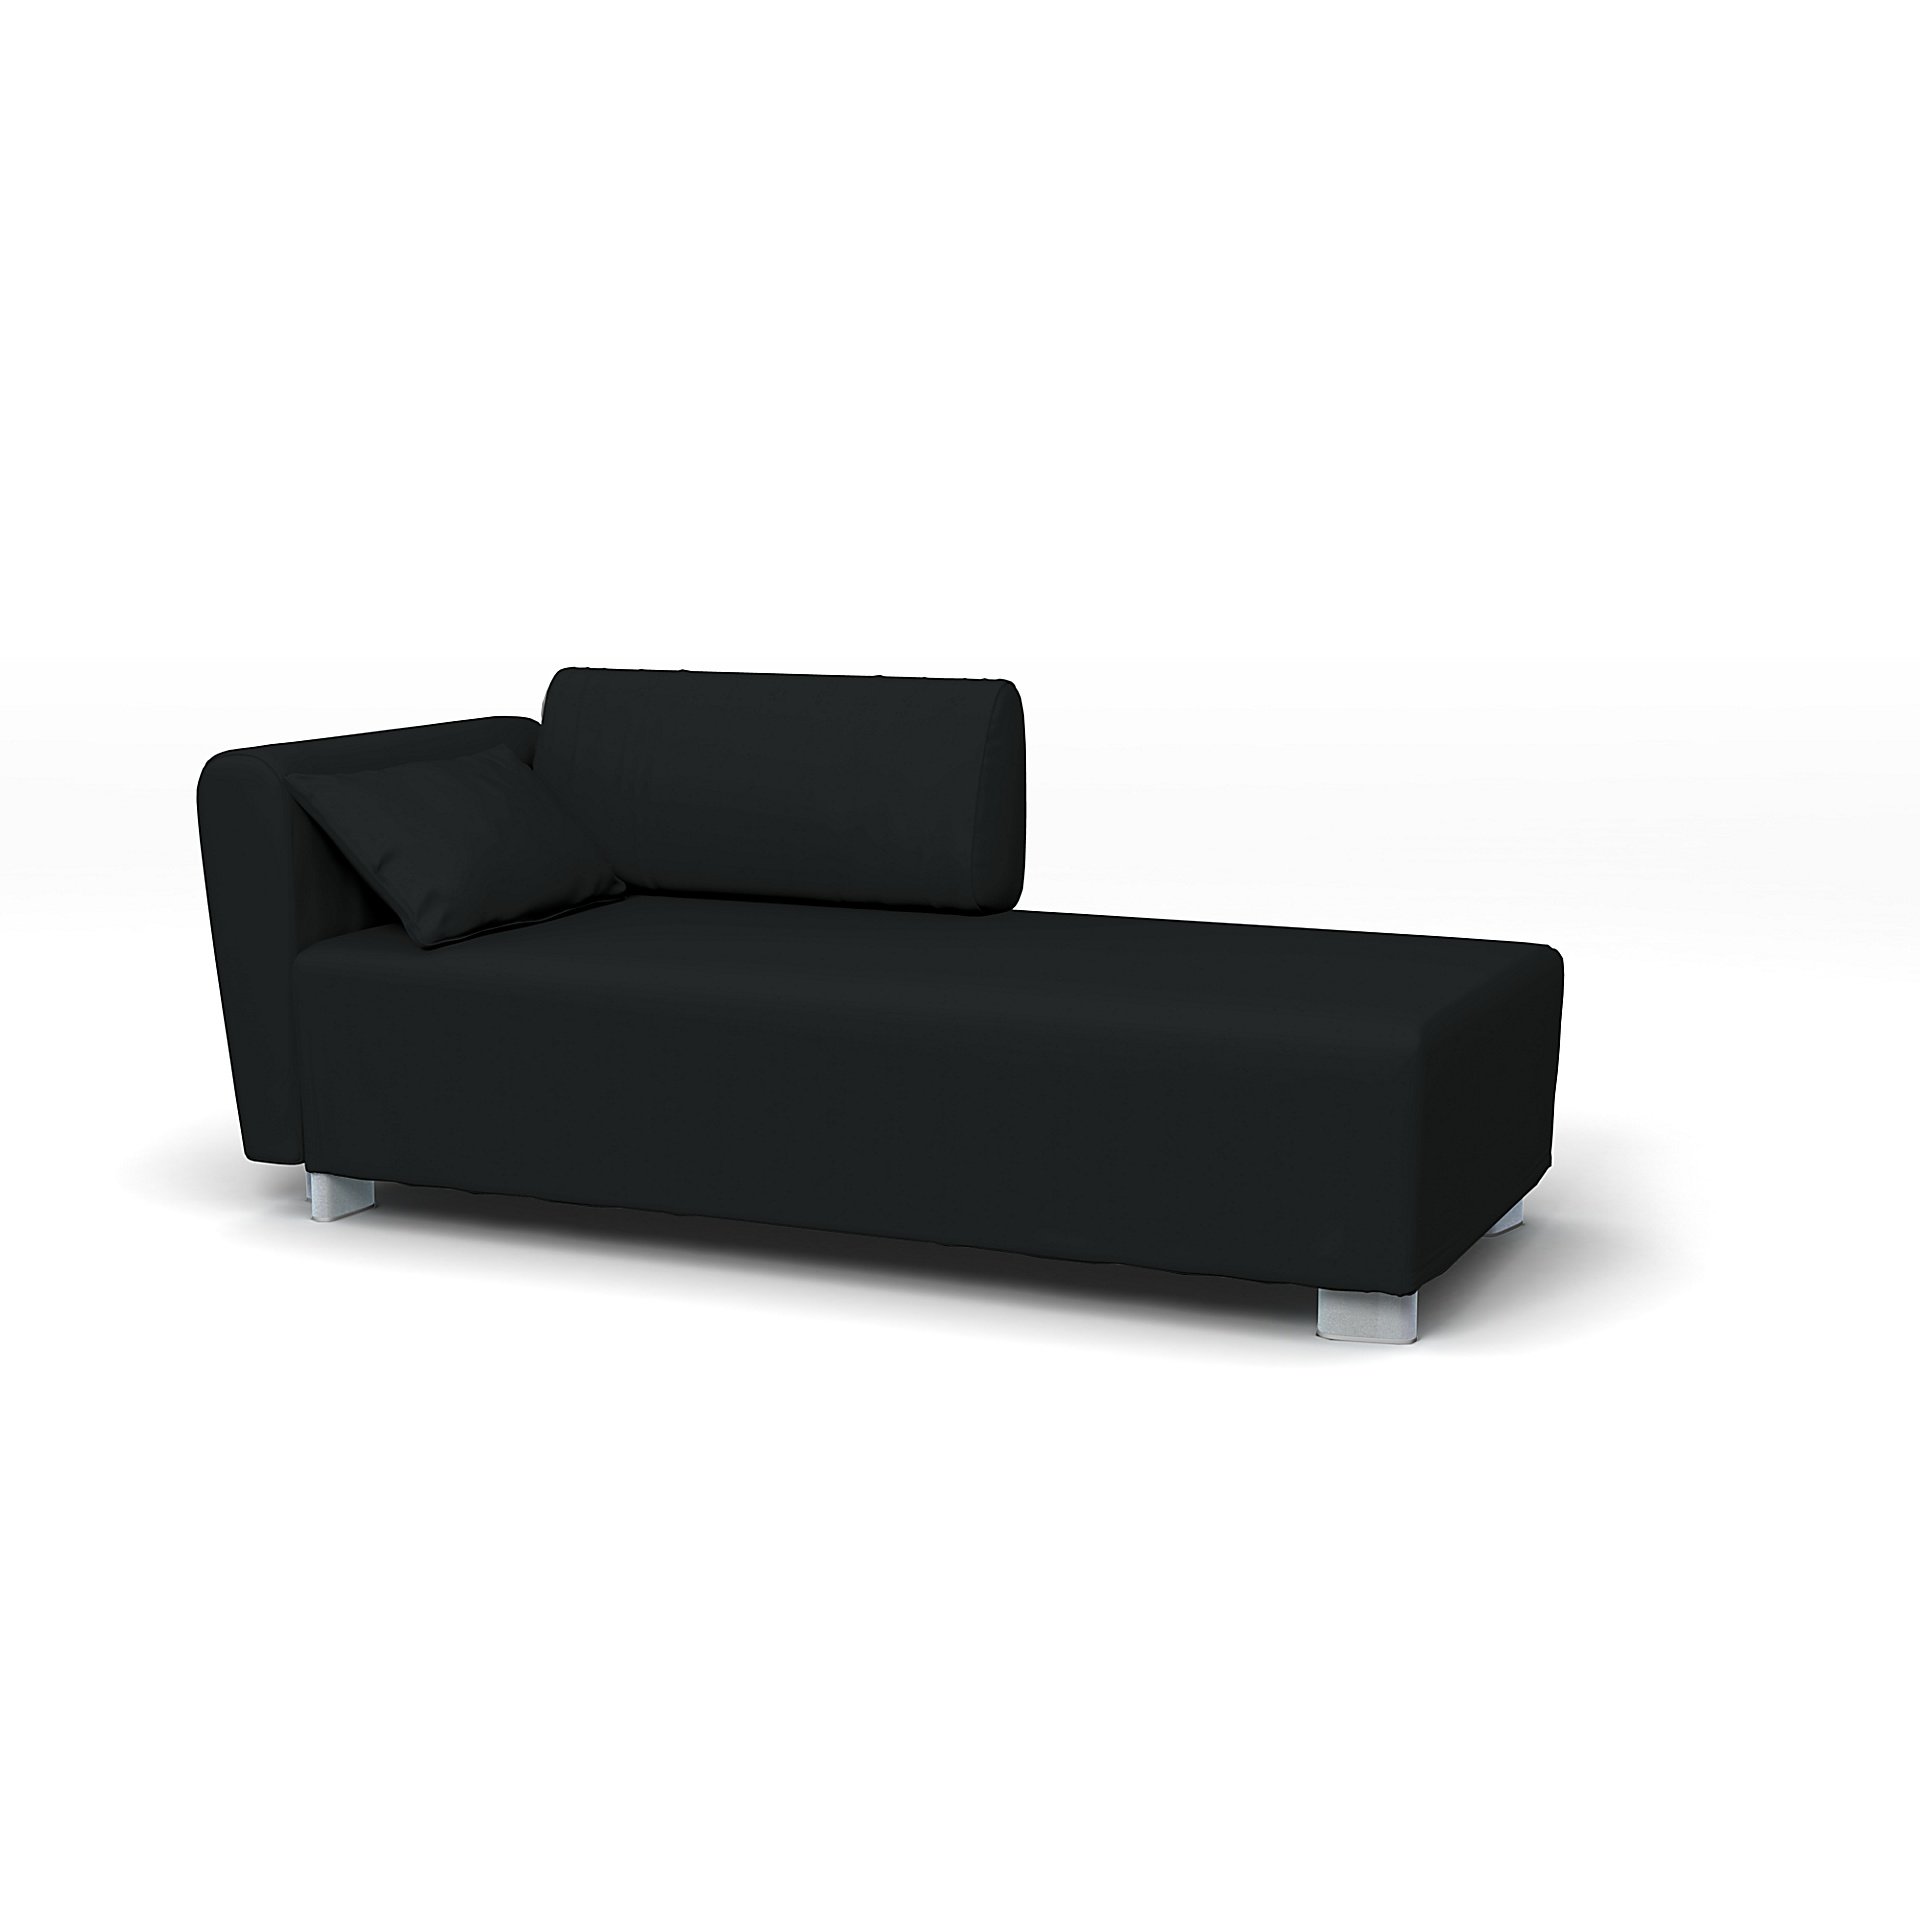 IKEA - Mysinge Chaise Longue with Armrest Cover, Jet Black, Cotton - Bemz